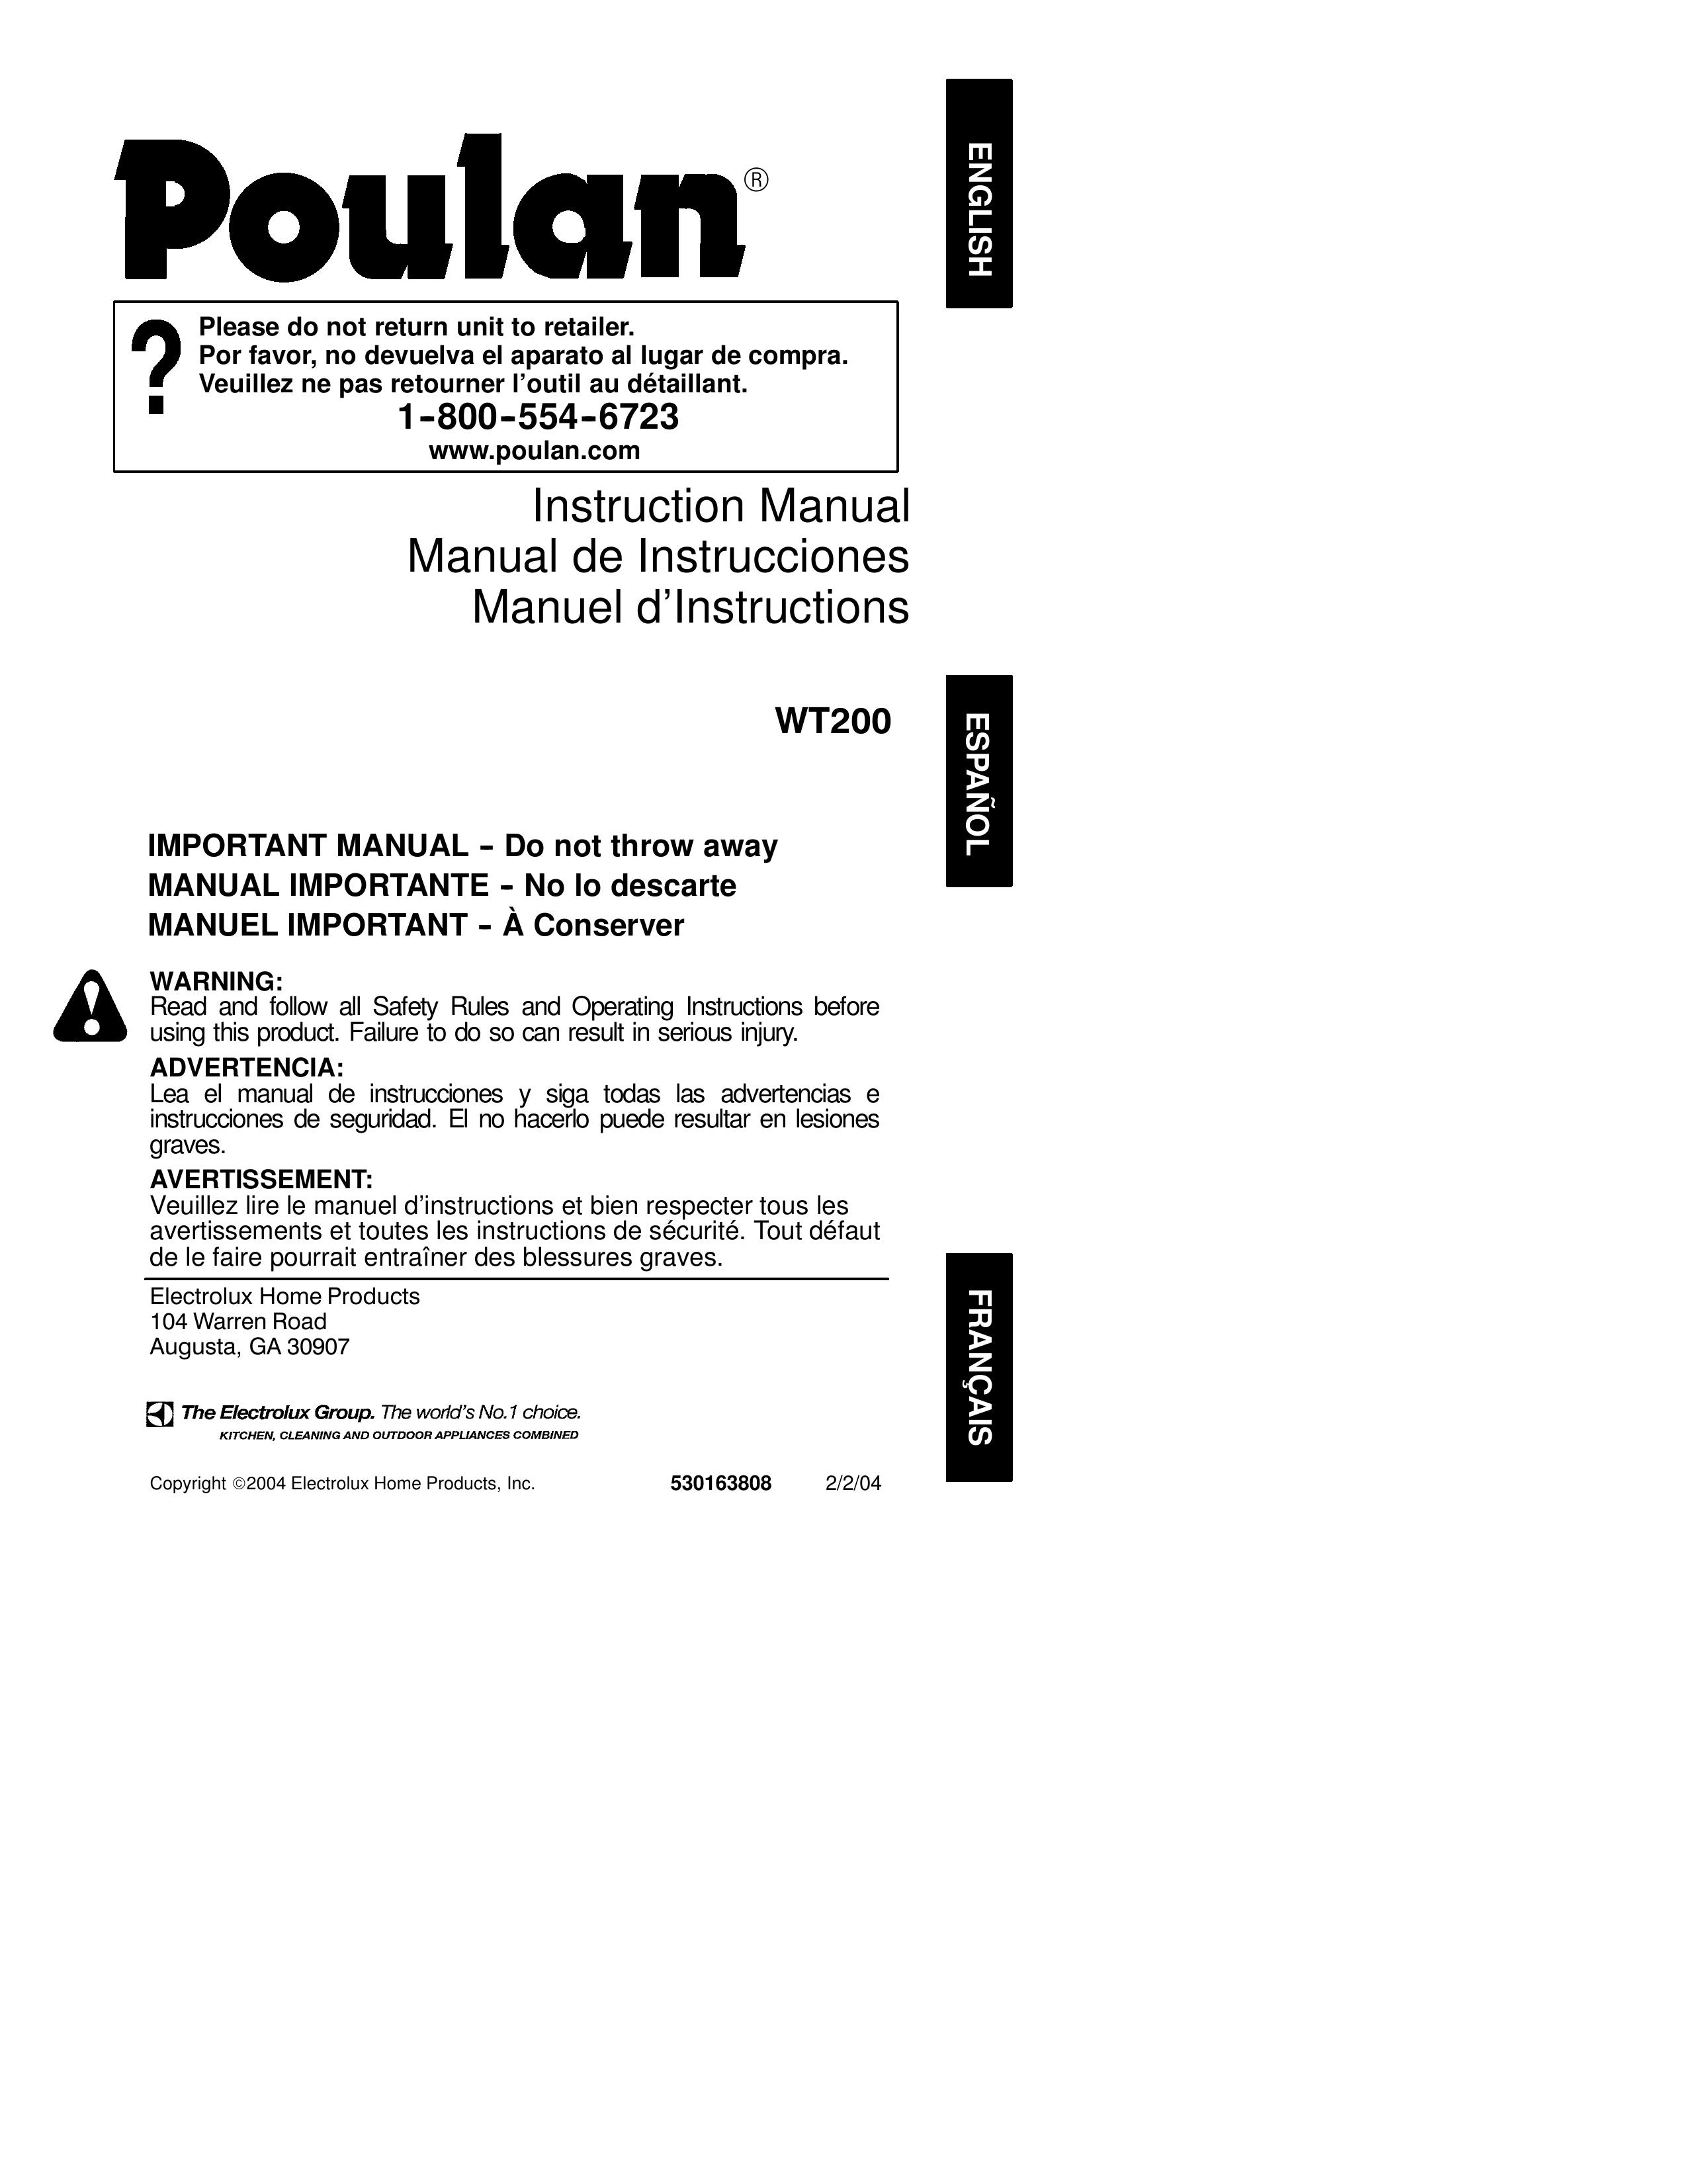 Poulan 530163808 Blower User Manual